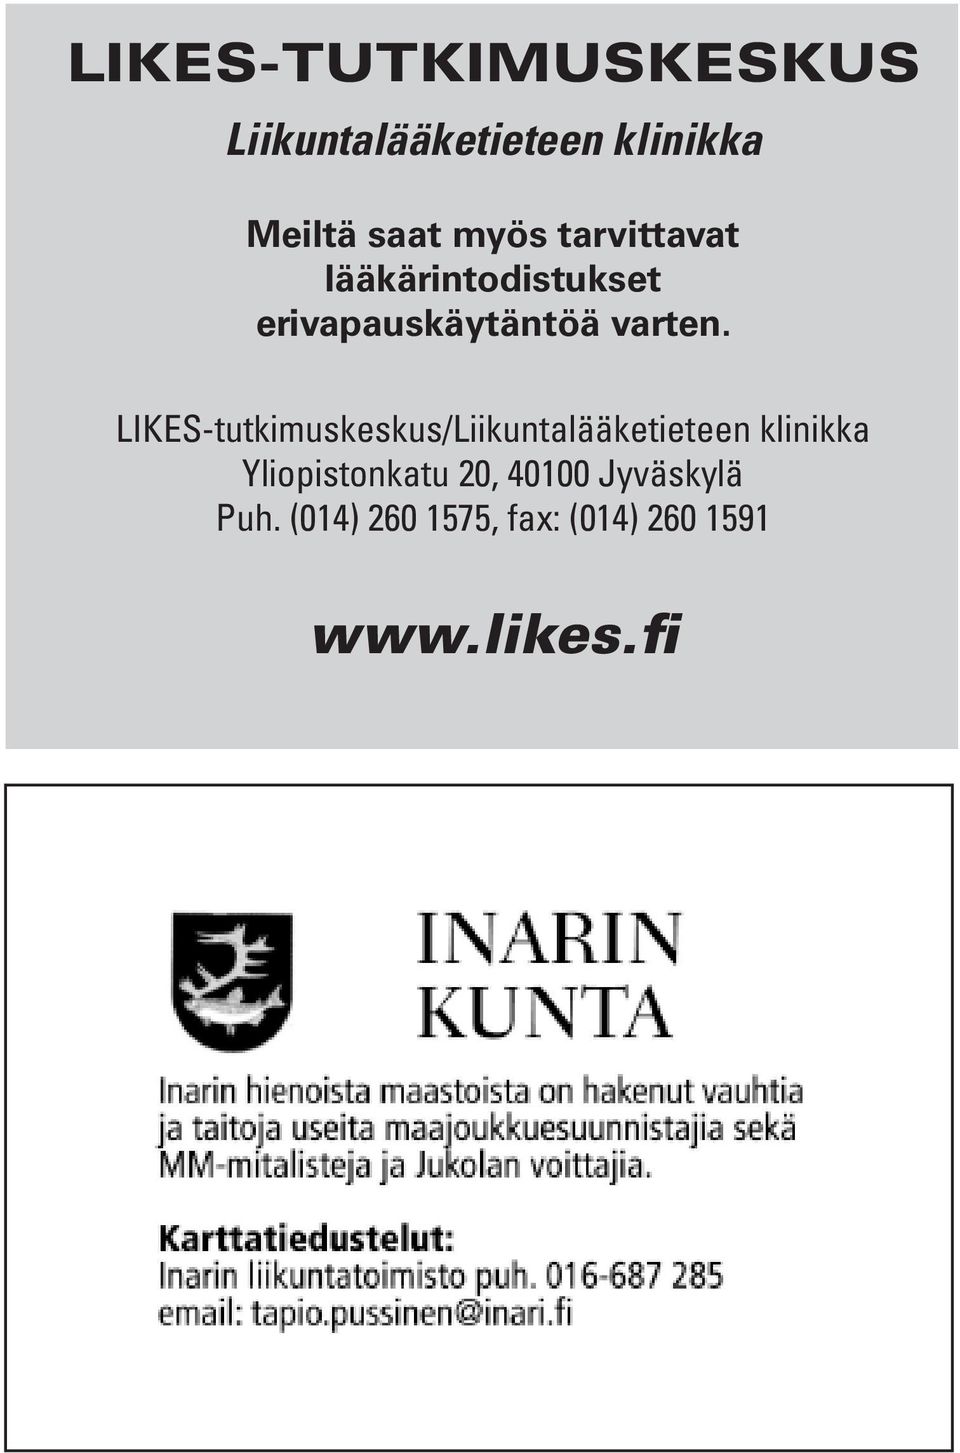 LIKES-tutkimuskeskus/Liikuntalääketieteen klinikka Yliopistonkatu